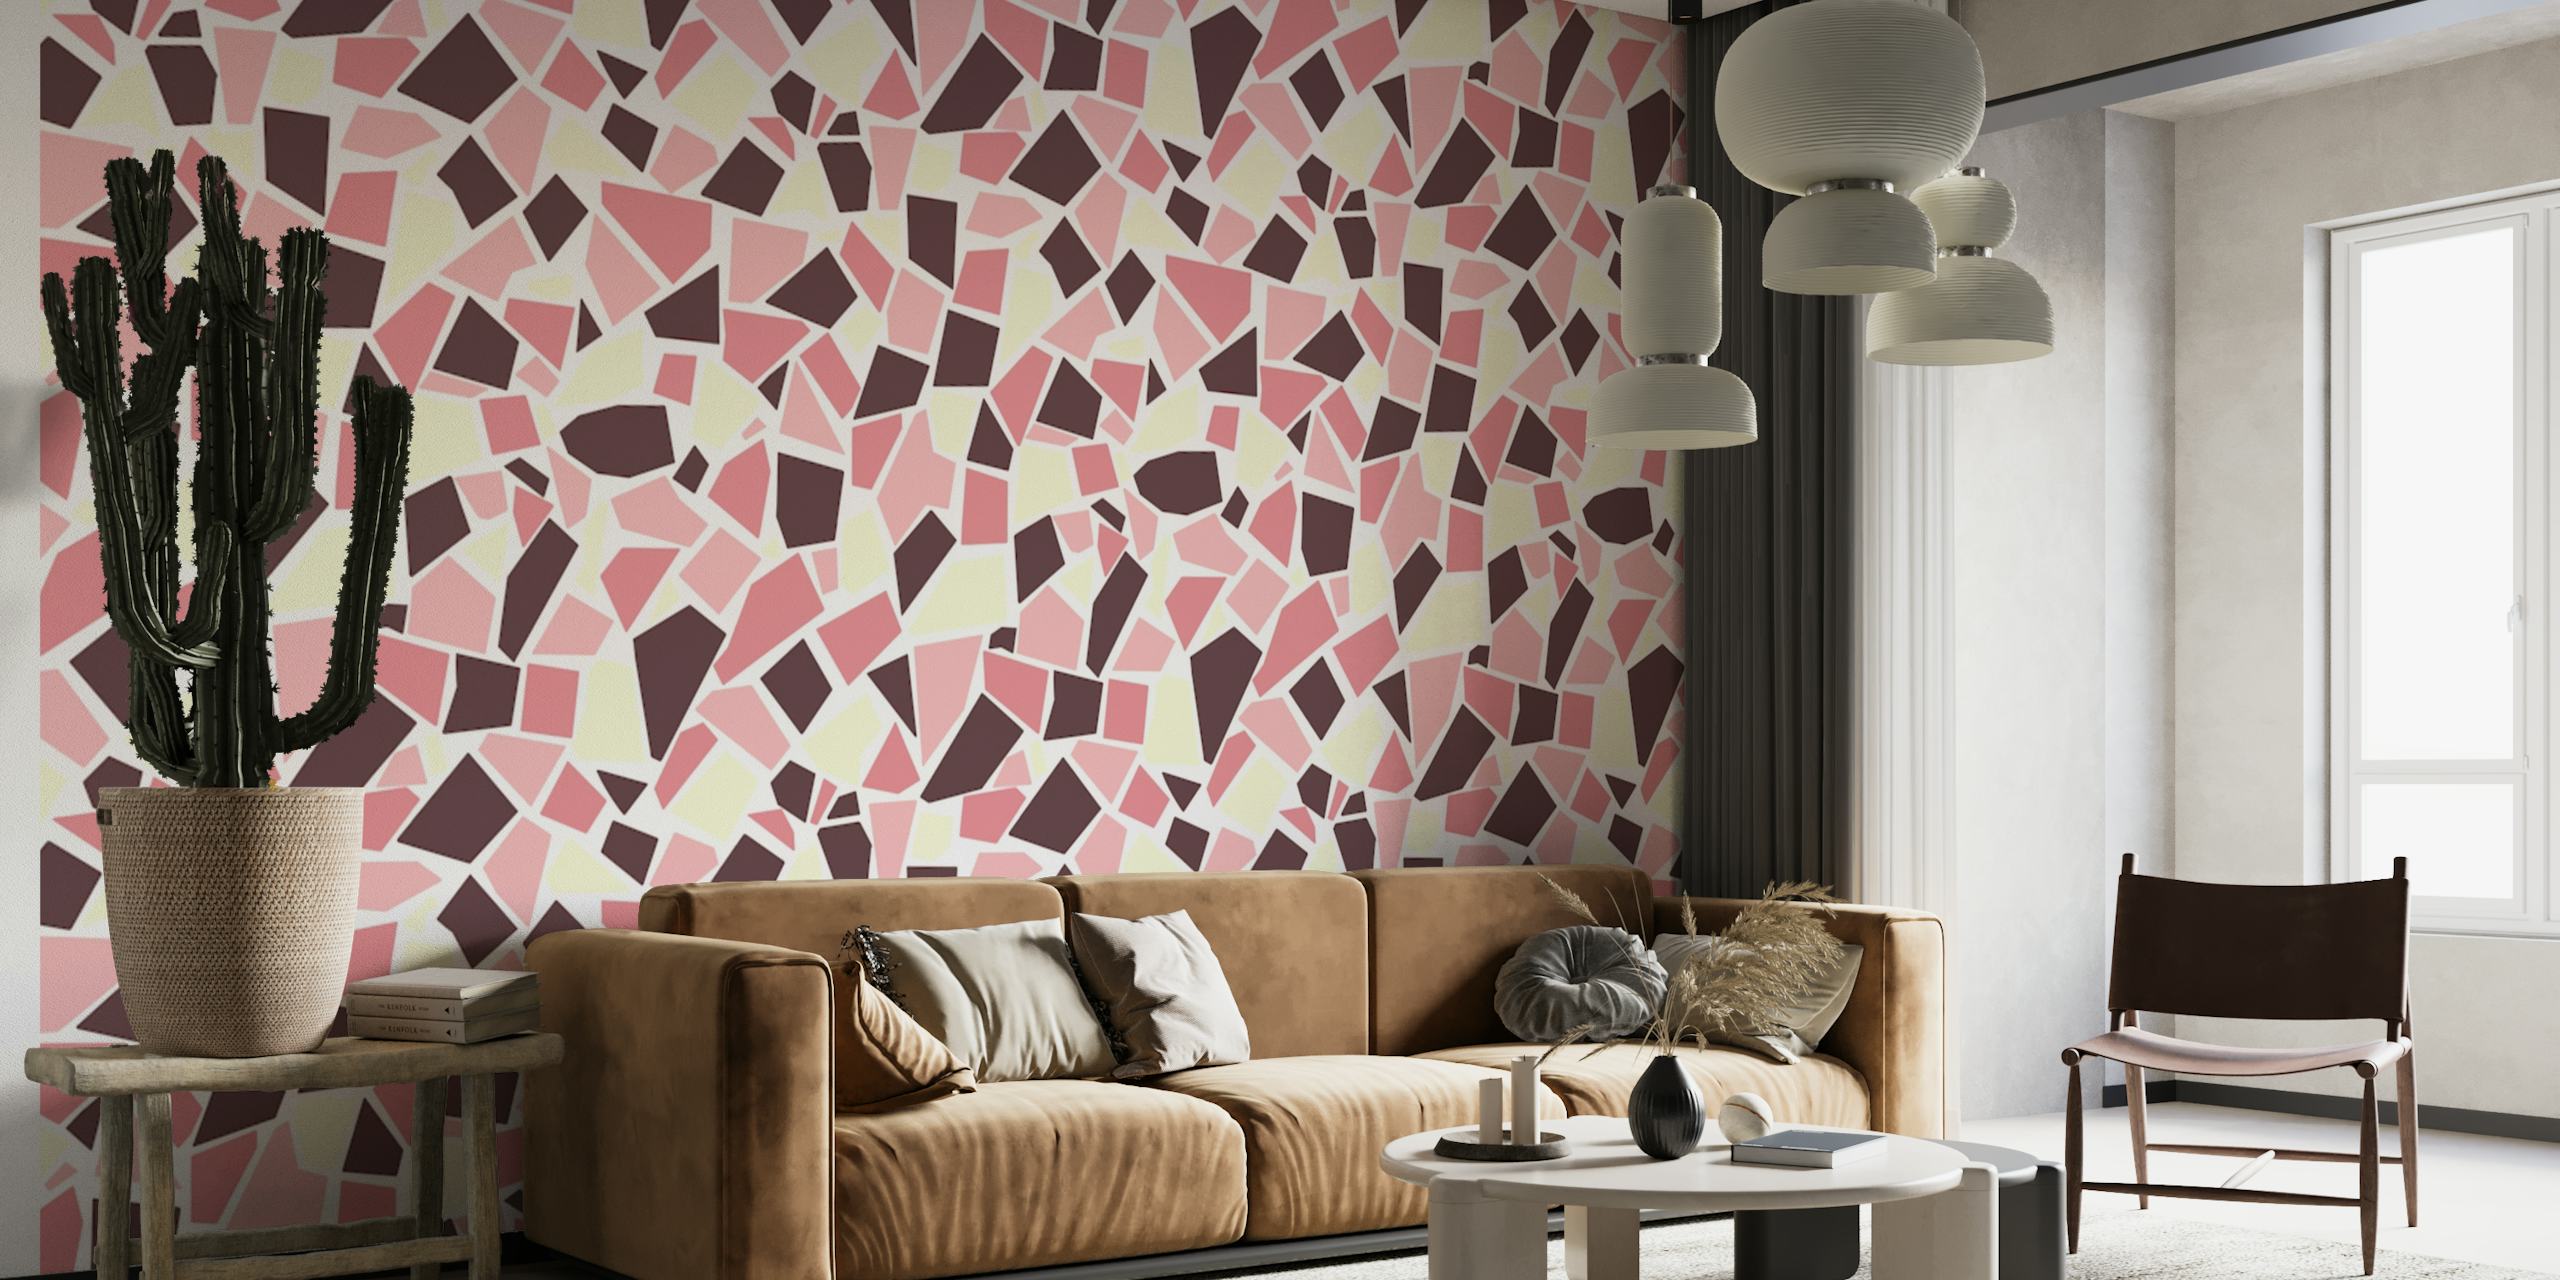 Mosaic art 1 pink wallpaper